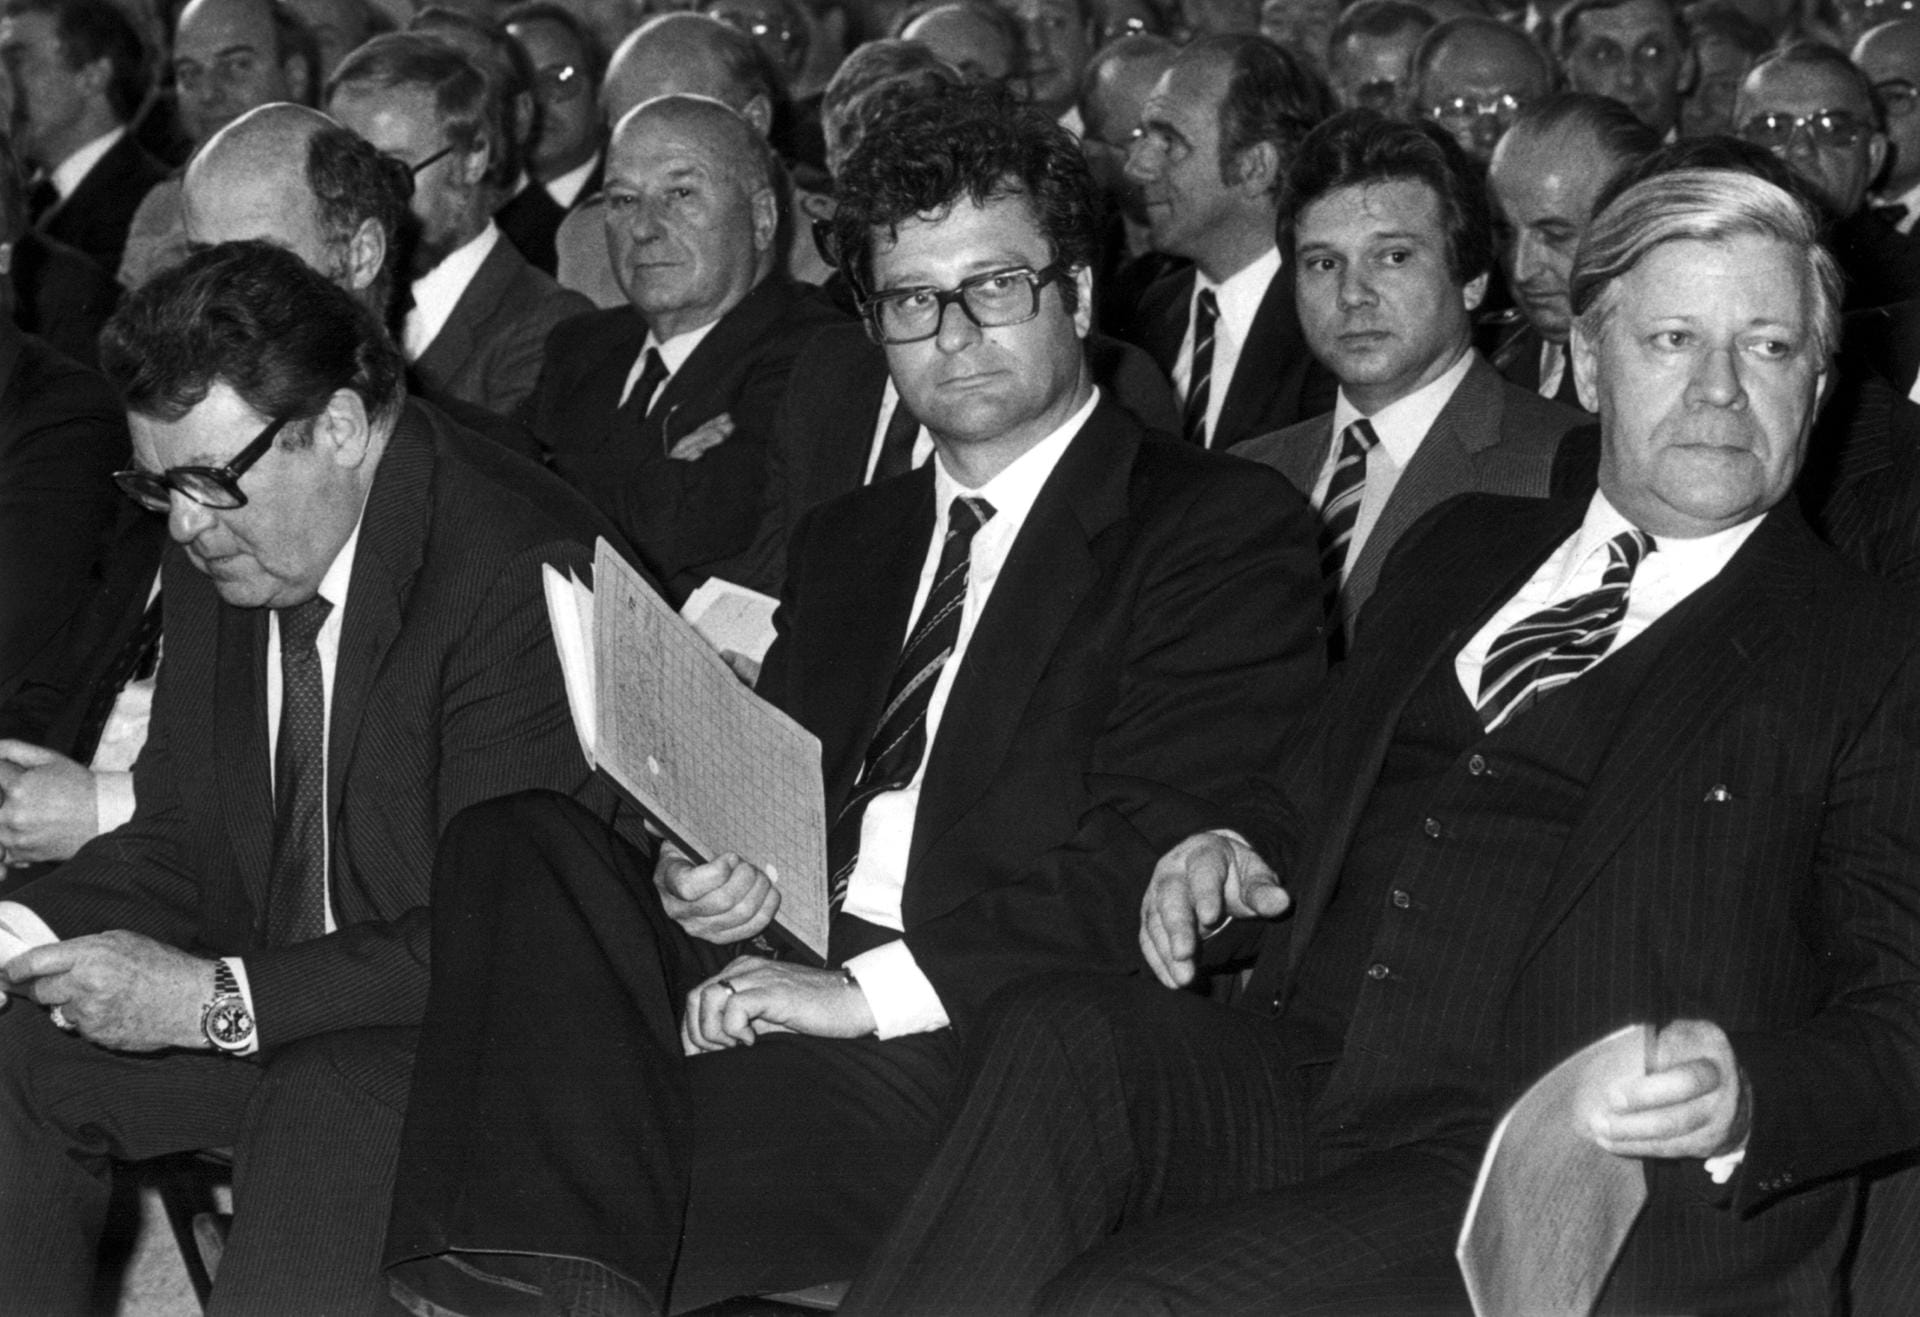 Klaus Kinkel (Mitte) im Jahr 1981 in Bayern. Links der damalige bayerische Ministerpräsident Franz Josef Strauß, rechts der damalige Bundeskanzler Helmut Schmidt. Kinkel war zu der Zeit Präsident des Bundesnachrichtendienstes.